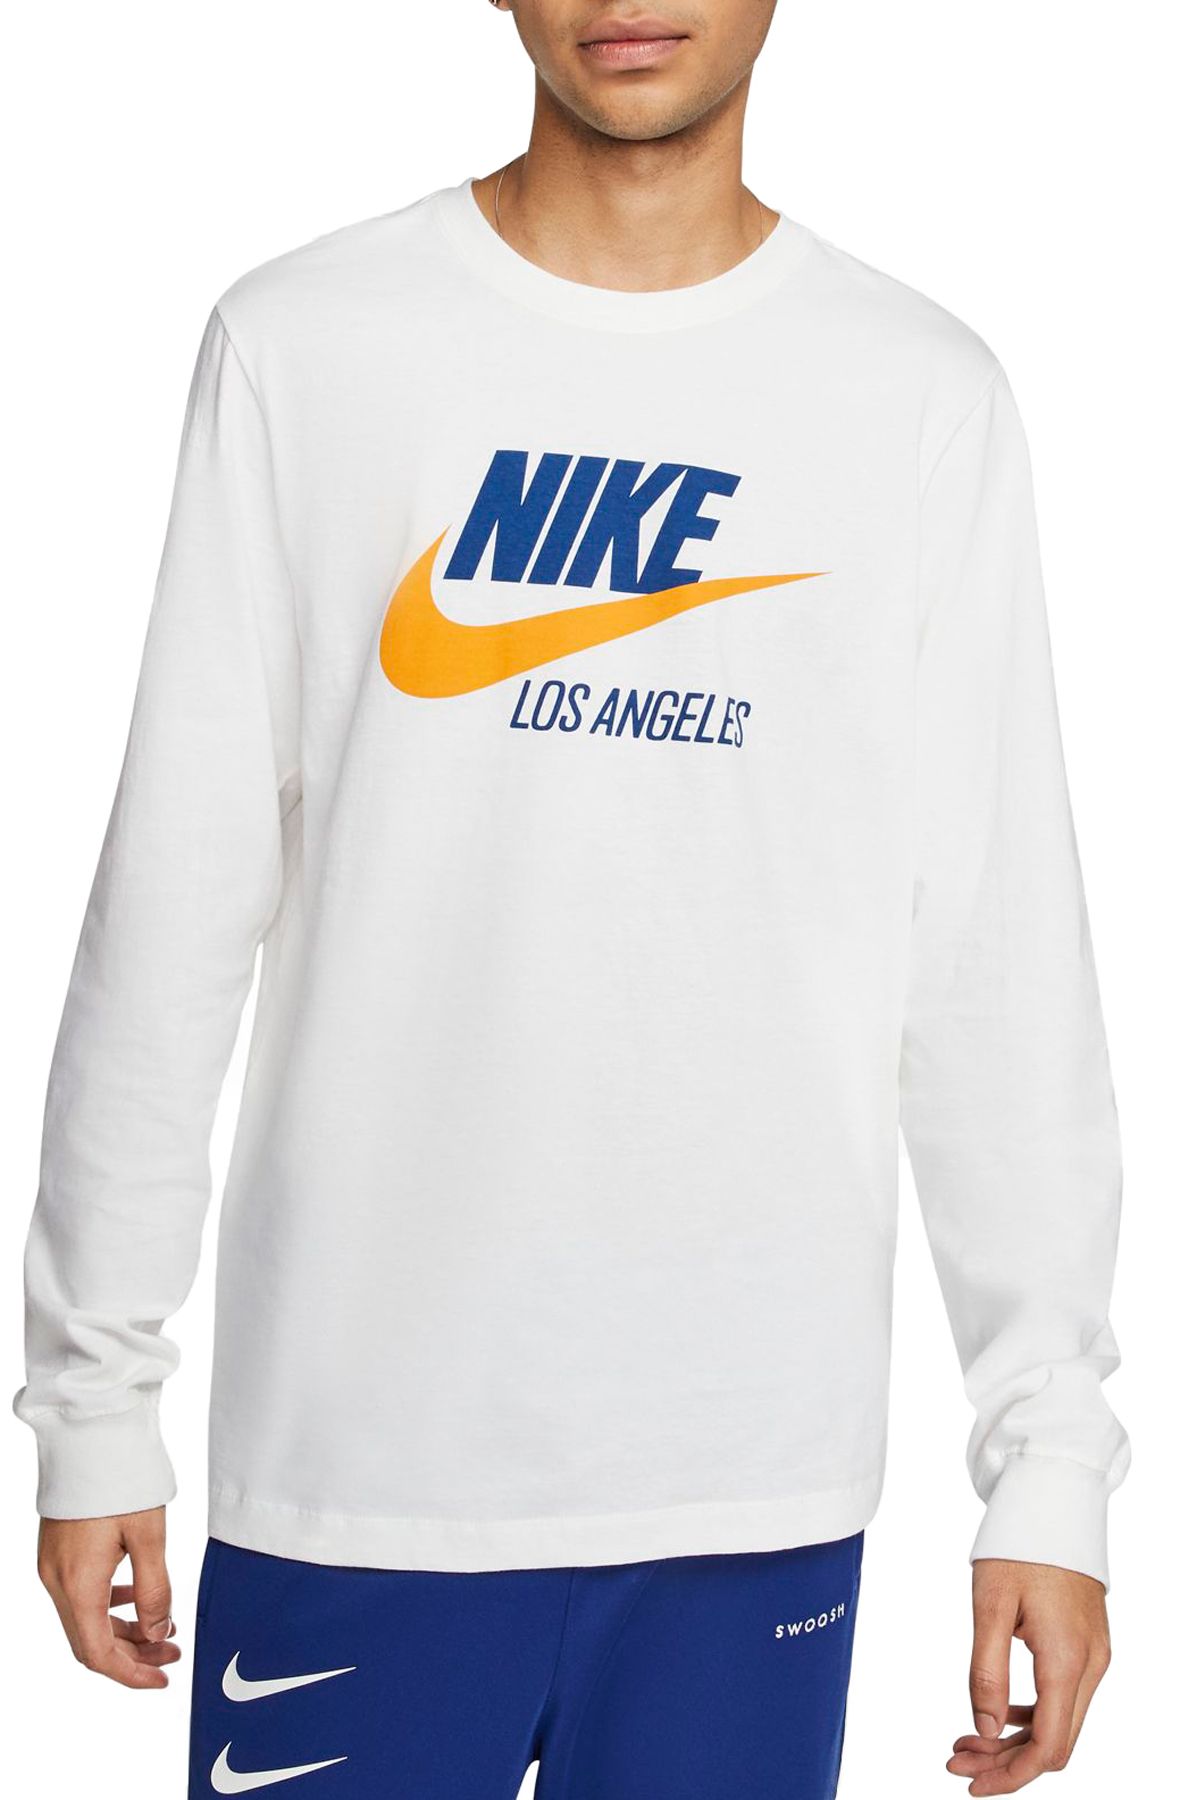 Nike Sportswear Men's Los Angeles T-Shirt